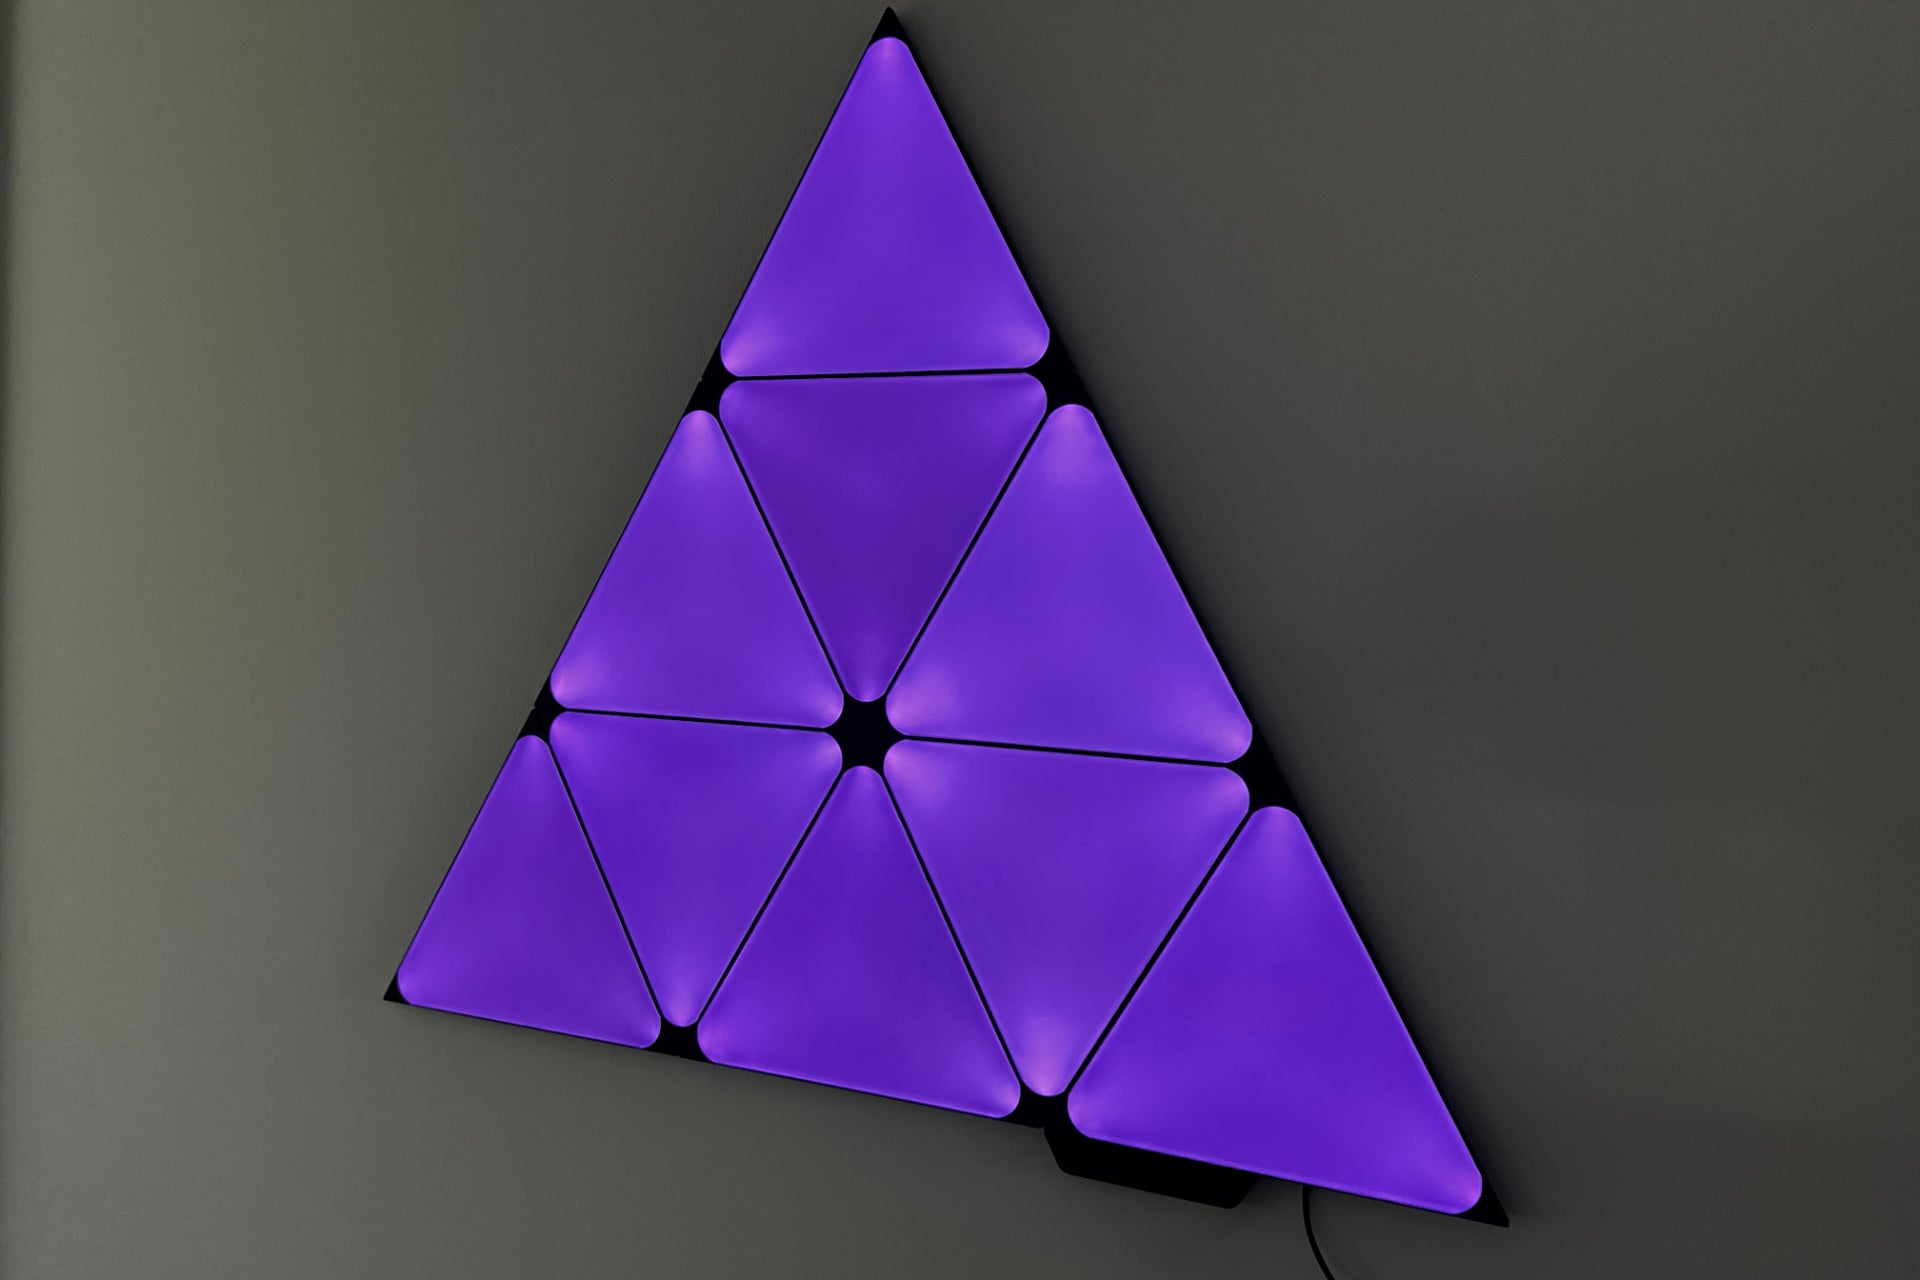 Nanoleaf Shapes Limited Edition Ultra Black Triangles lit up